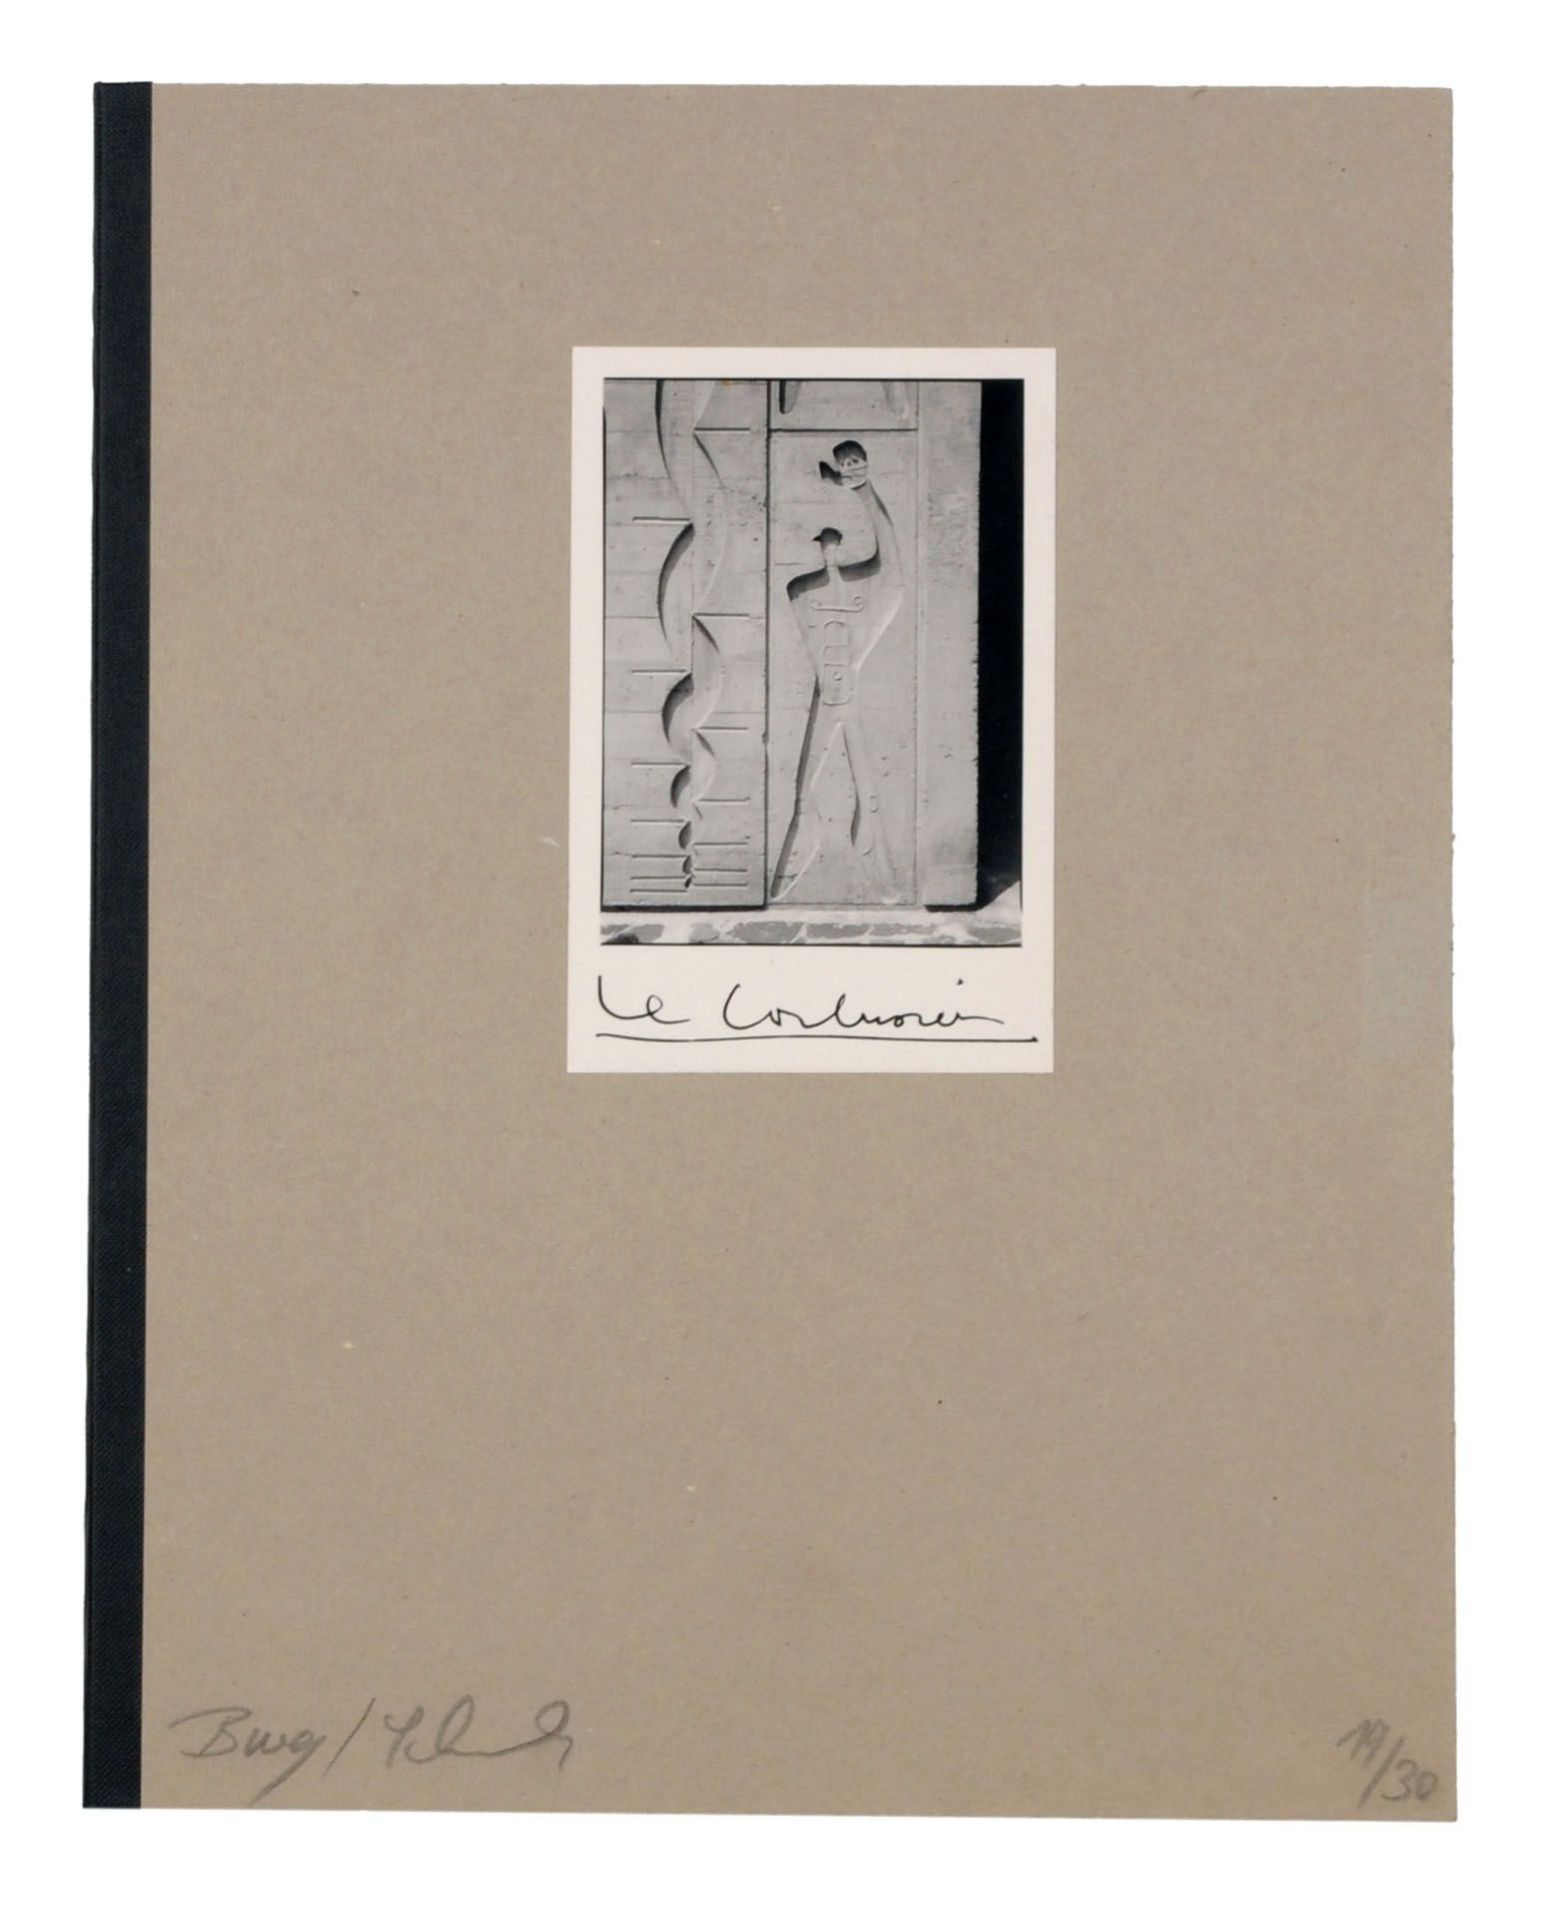 Barbara Burg, Oliver Schuh "Le Corbusier". 1996.